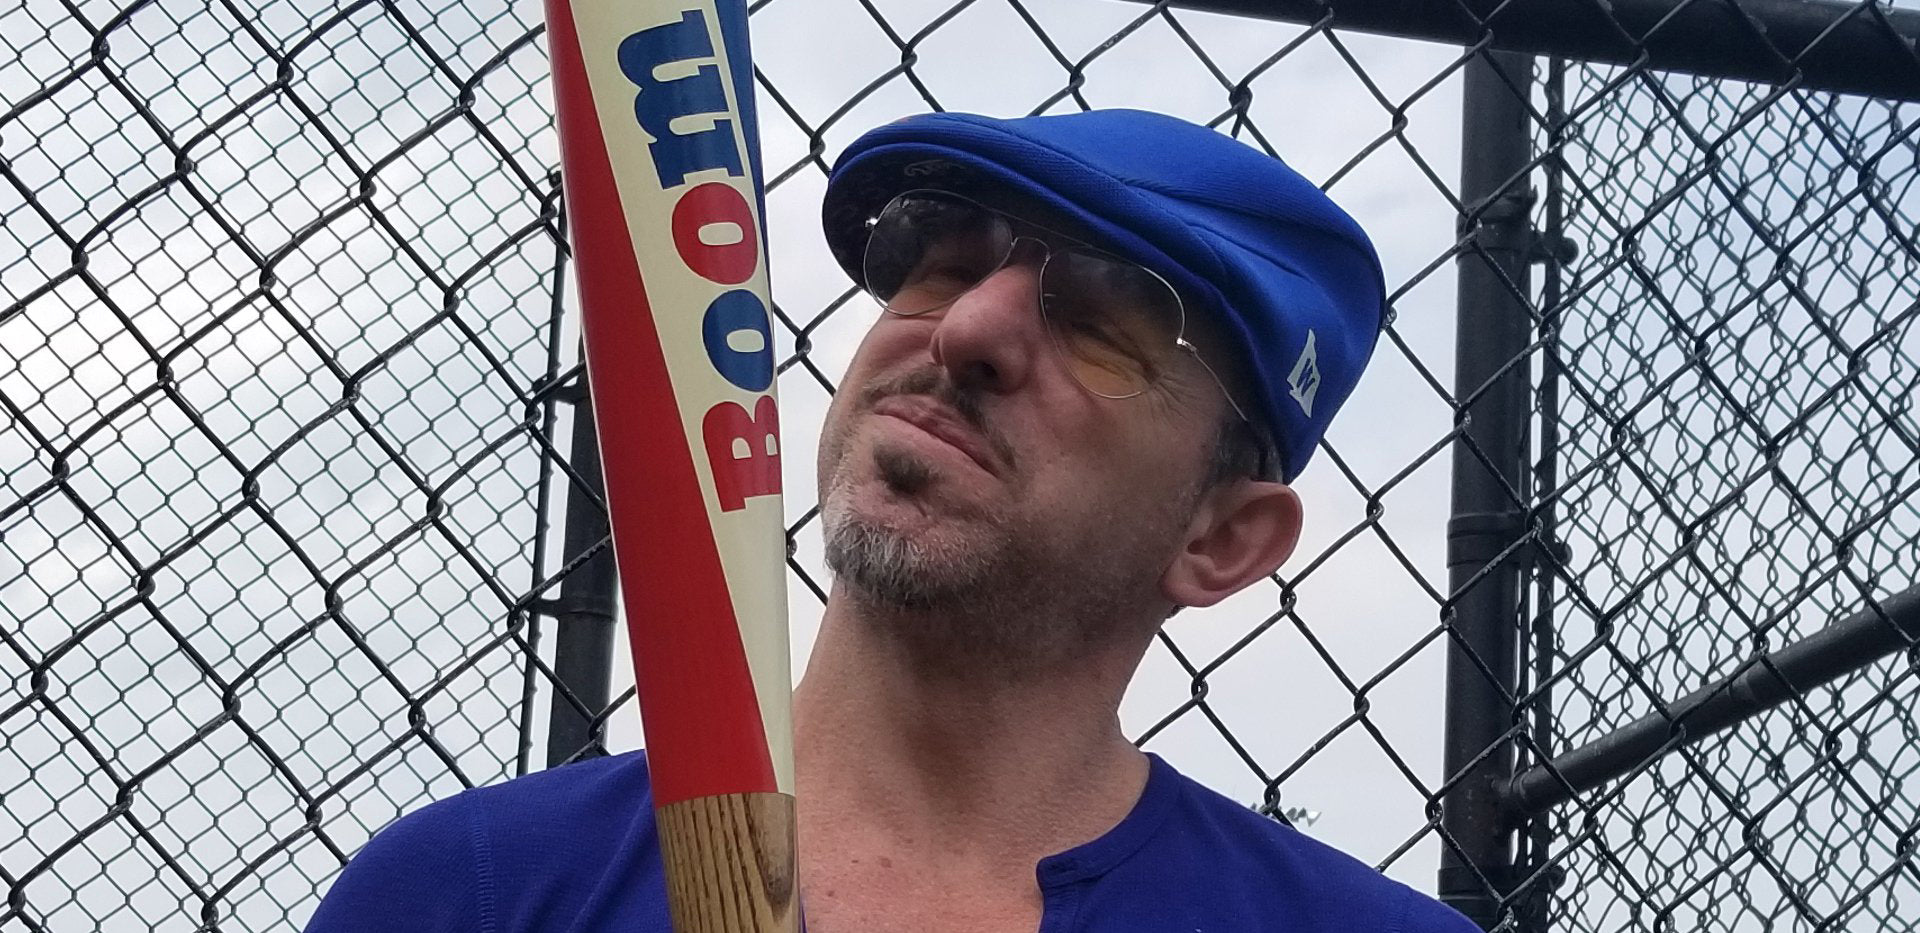 Artist Matthew Lee Rosen and his boom stick baseball bat